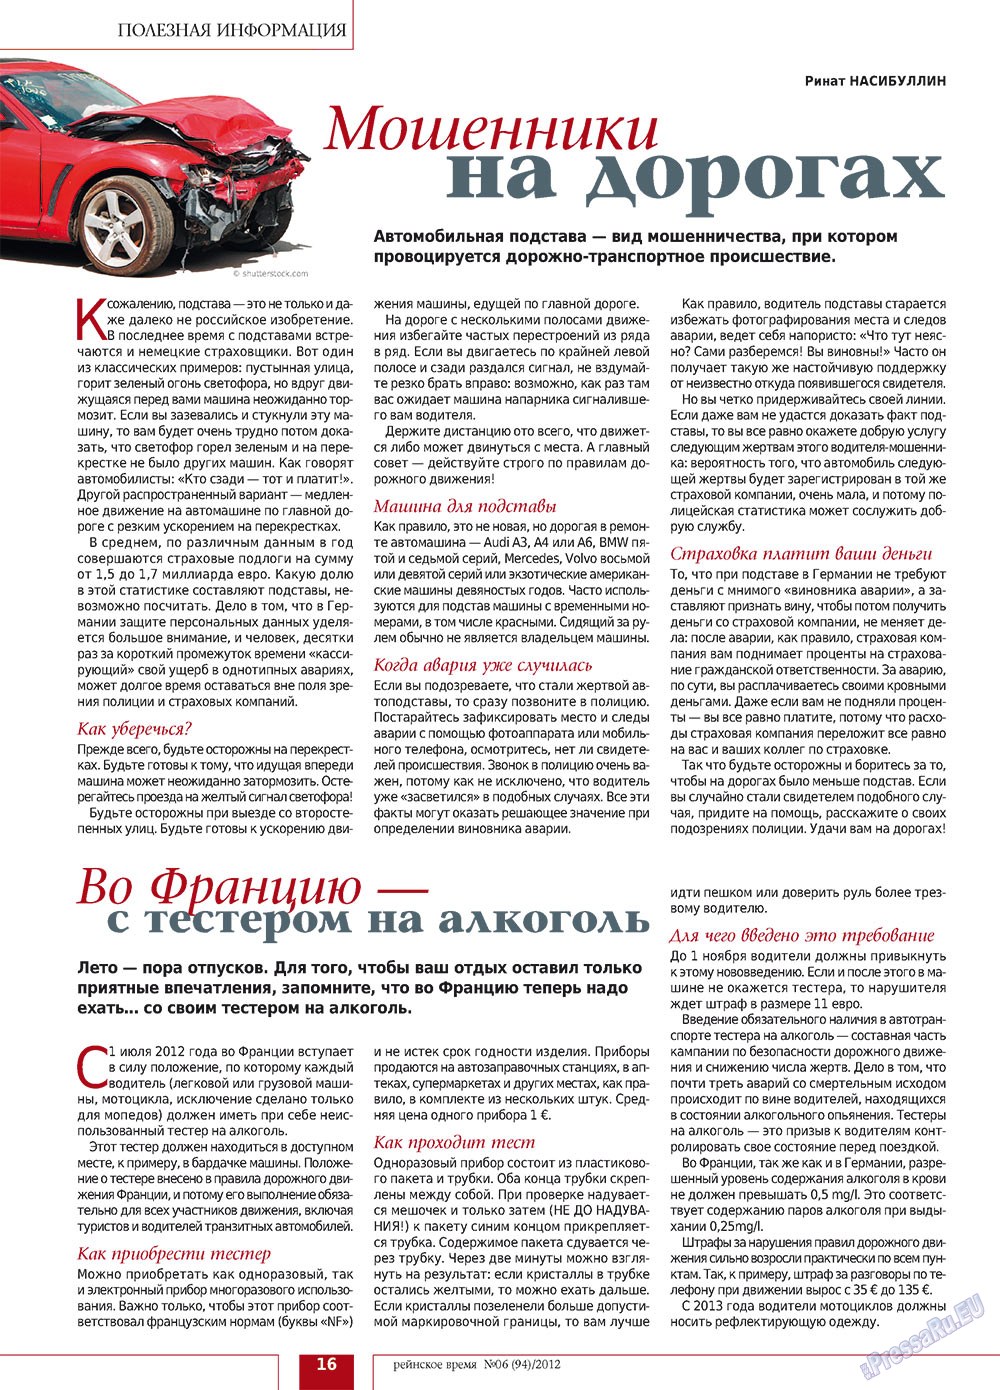 Рейнское время, журнал. 2012 №6 стр.16